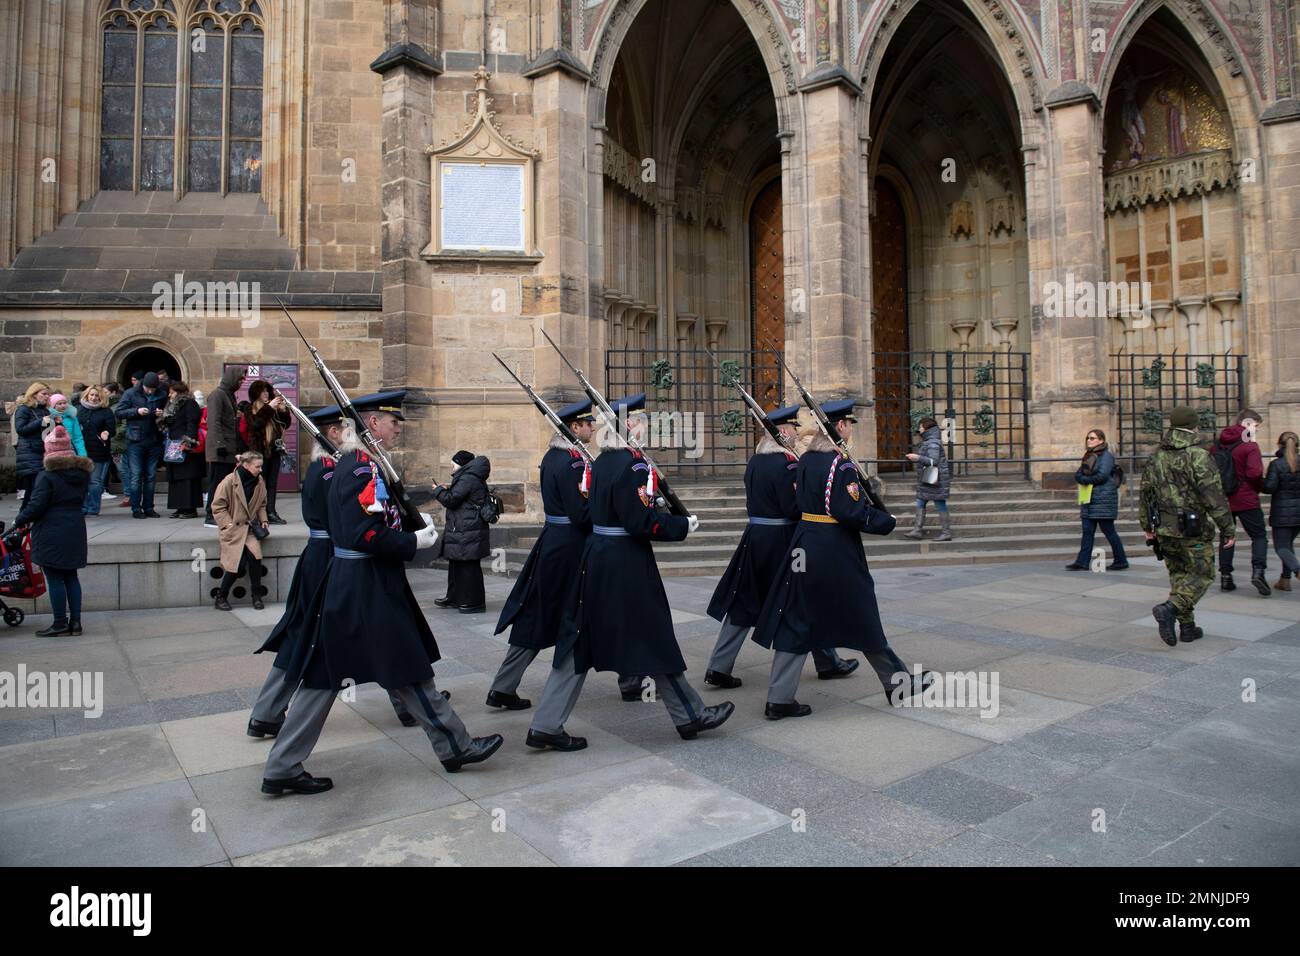 Guard troop marching, St Vitus Cathedral, Prague Castle, Prague, Czech Republic Stock Photo